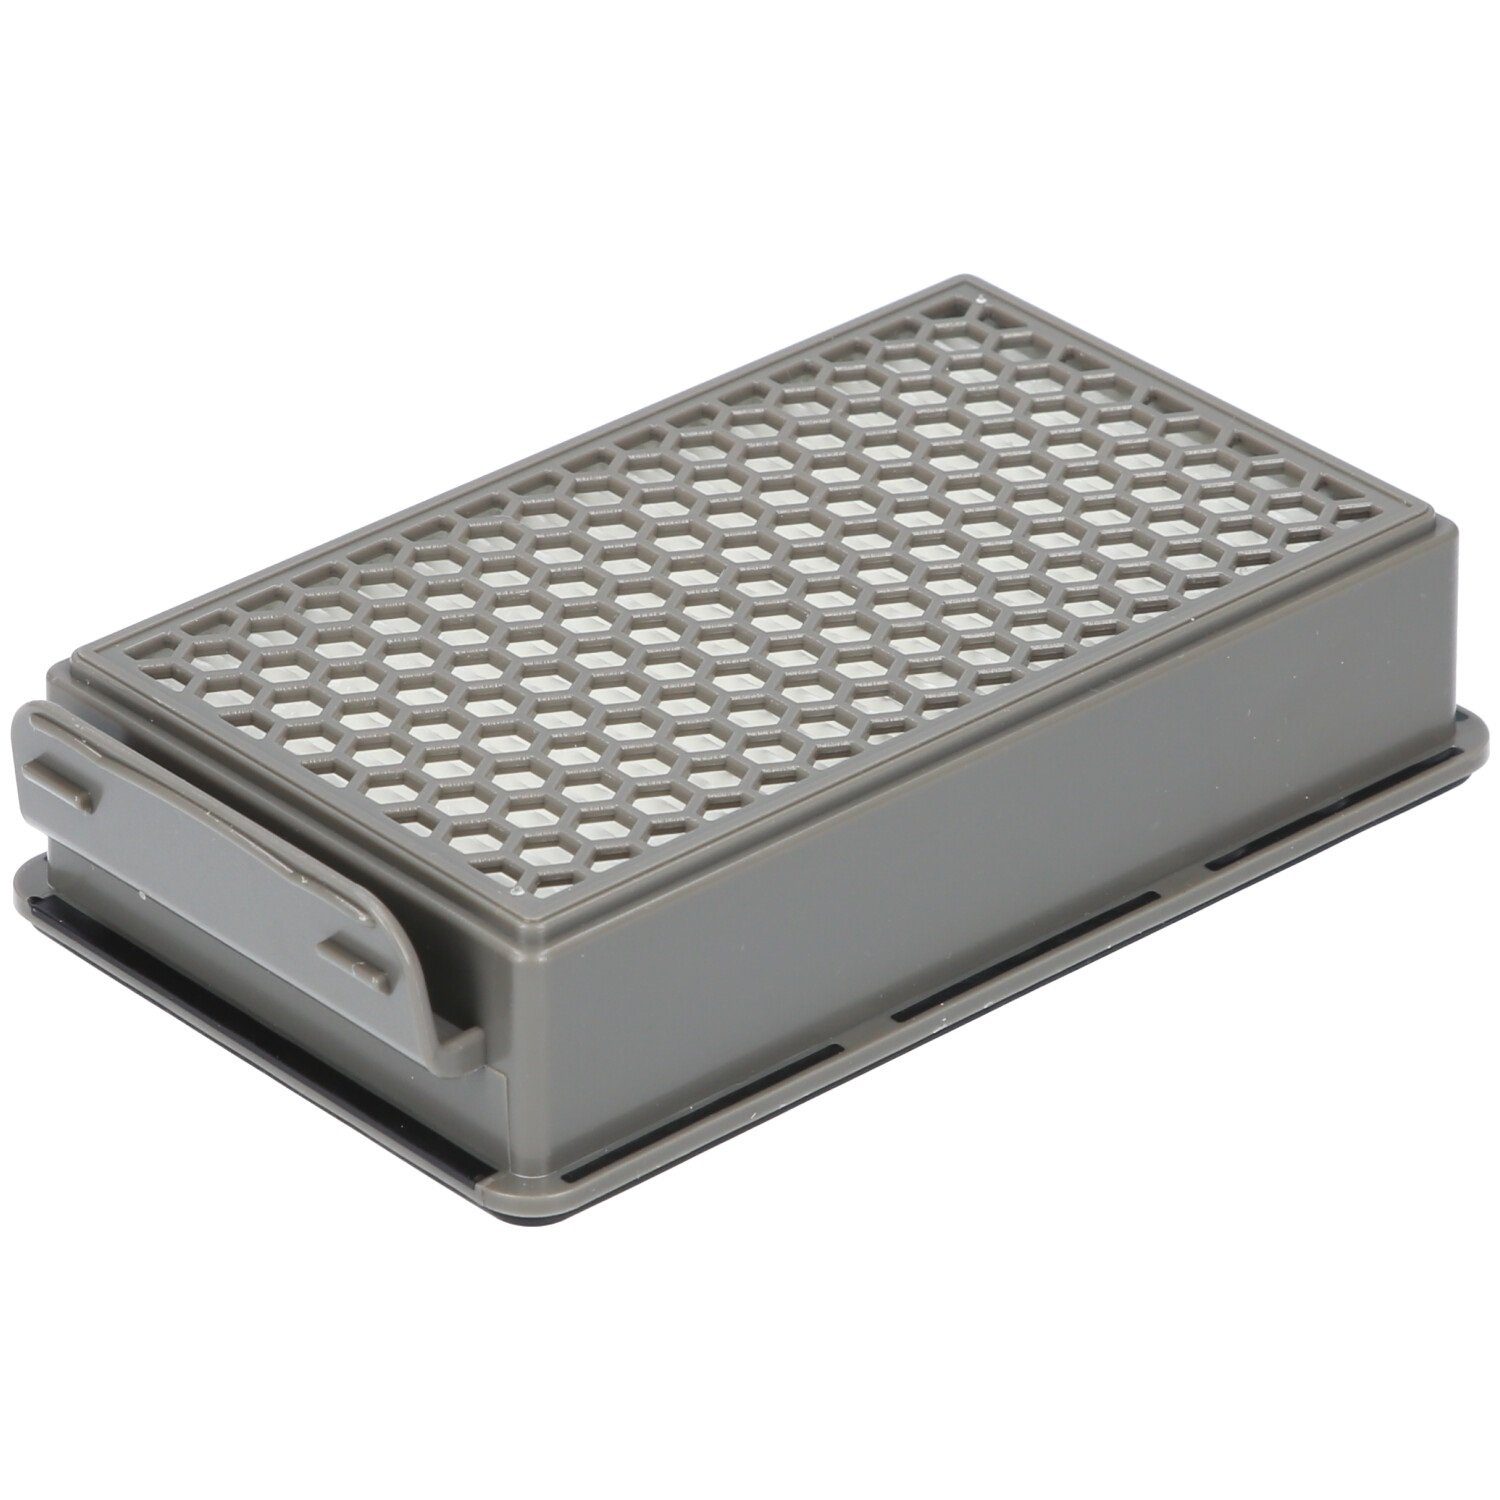 McFilter Filter-Set geeignet für Alternative 2x ZR005901 Rundfilter, Staubsauger, für SG3751WA Filterkassette, 2x Samurai